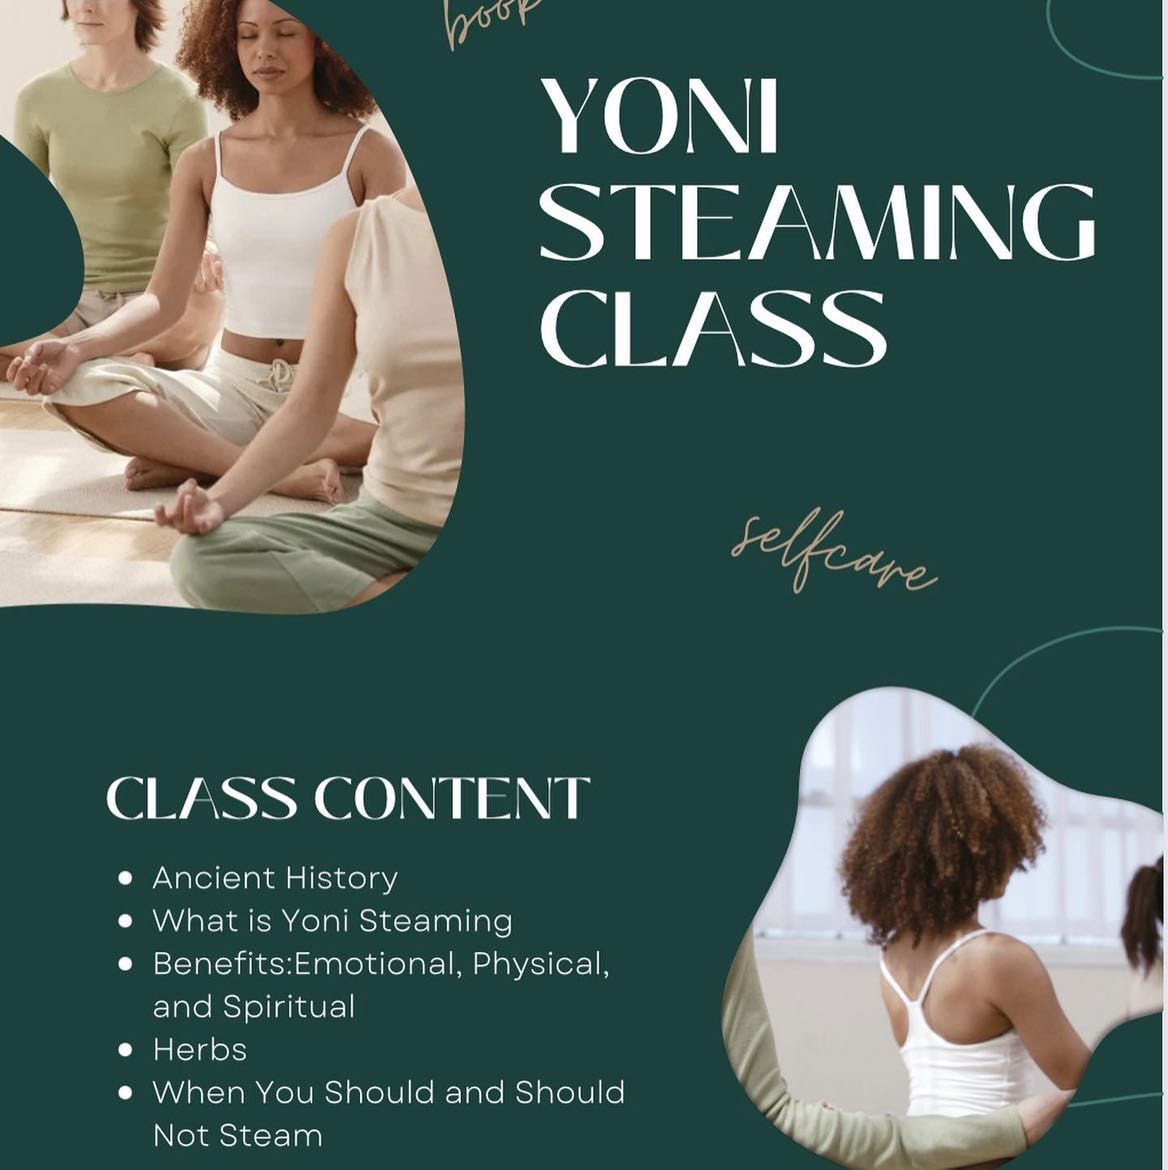 Yoni Steaming Class portfolio